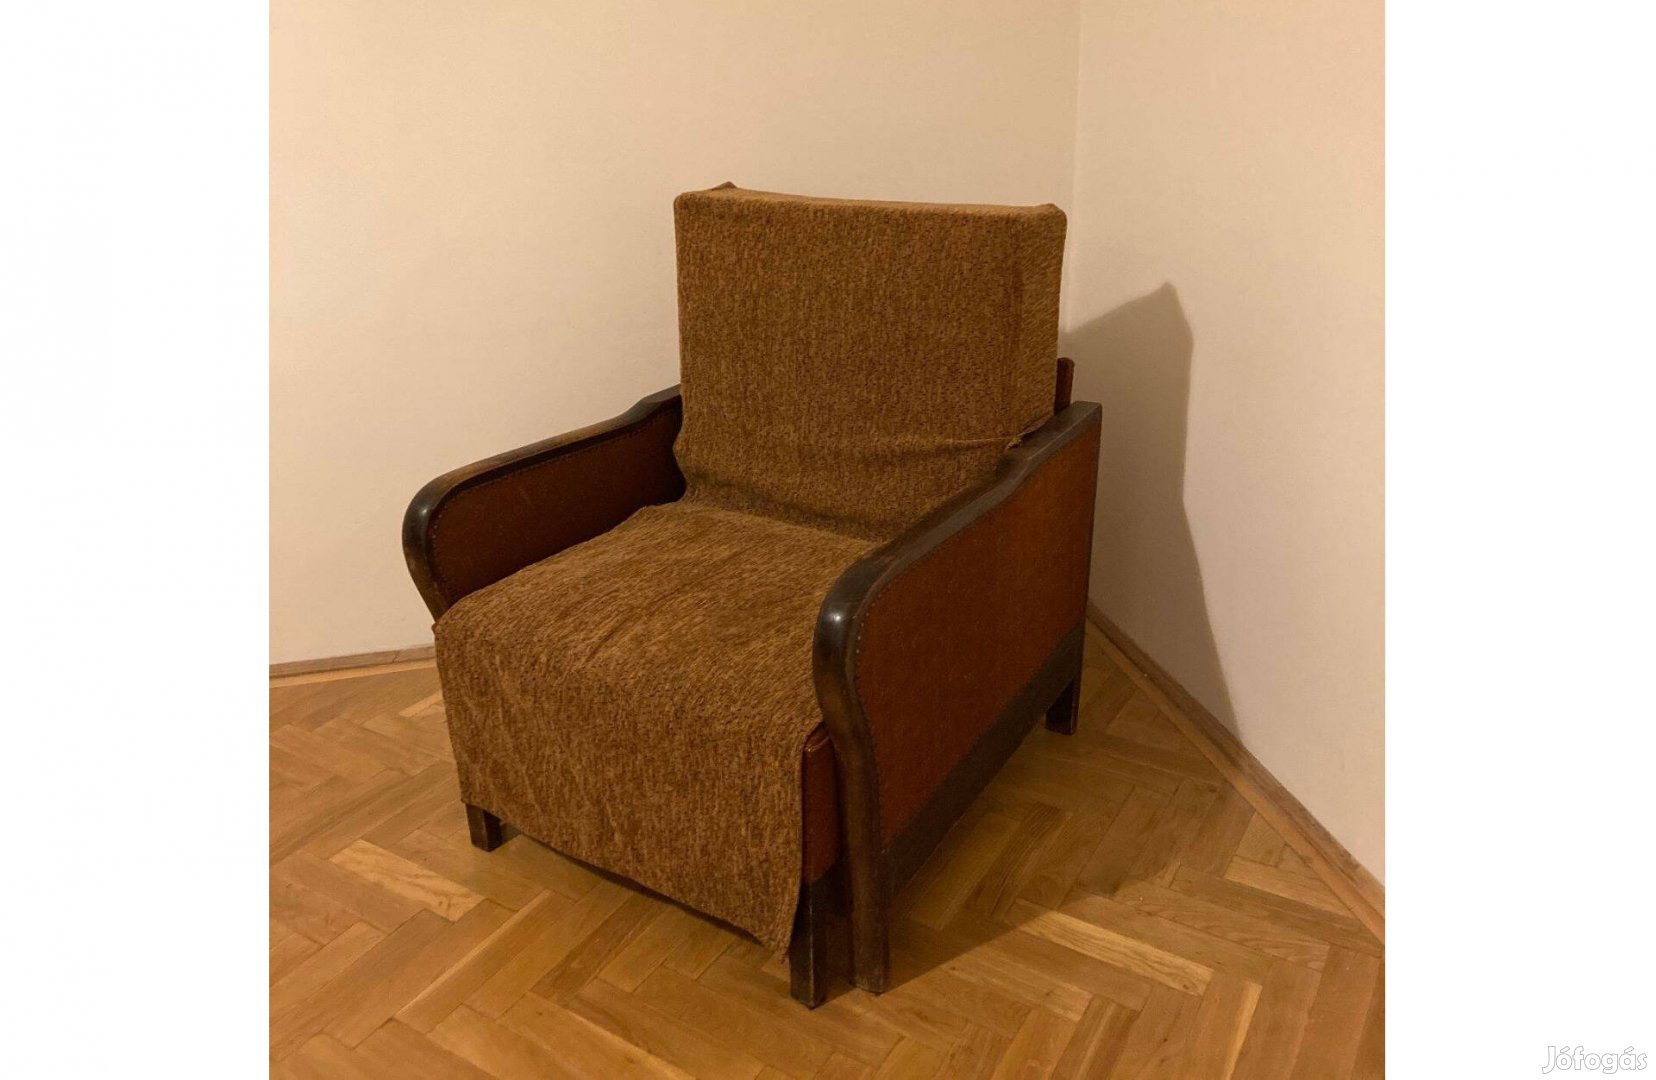 Ingyen elvihető régi fotelágy